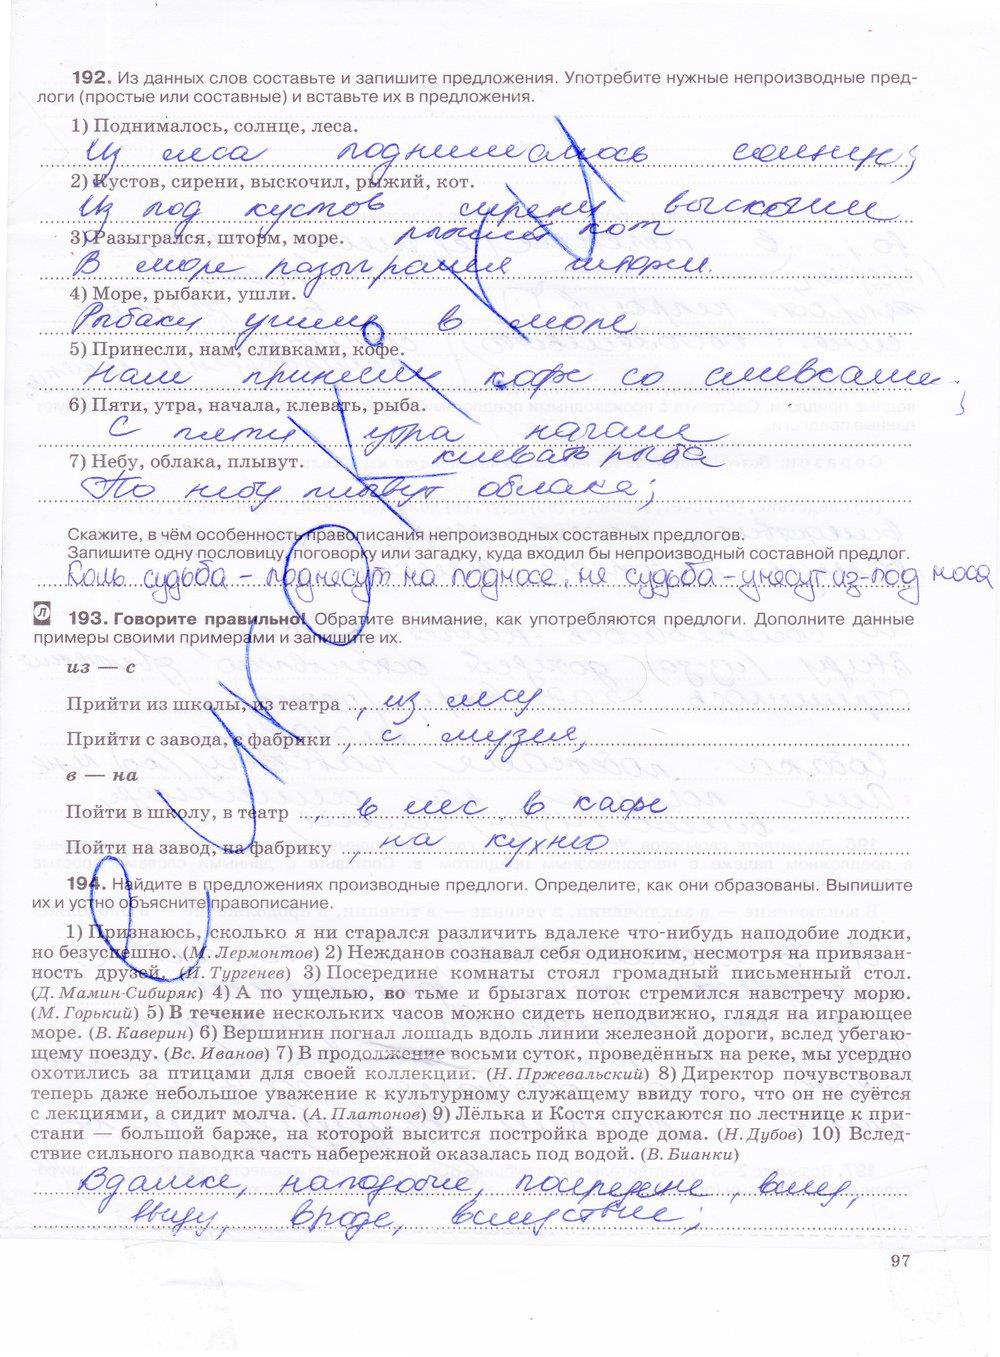 гдз 7 класс рабочая тетрадь страница 97 русский язык Ларионова